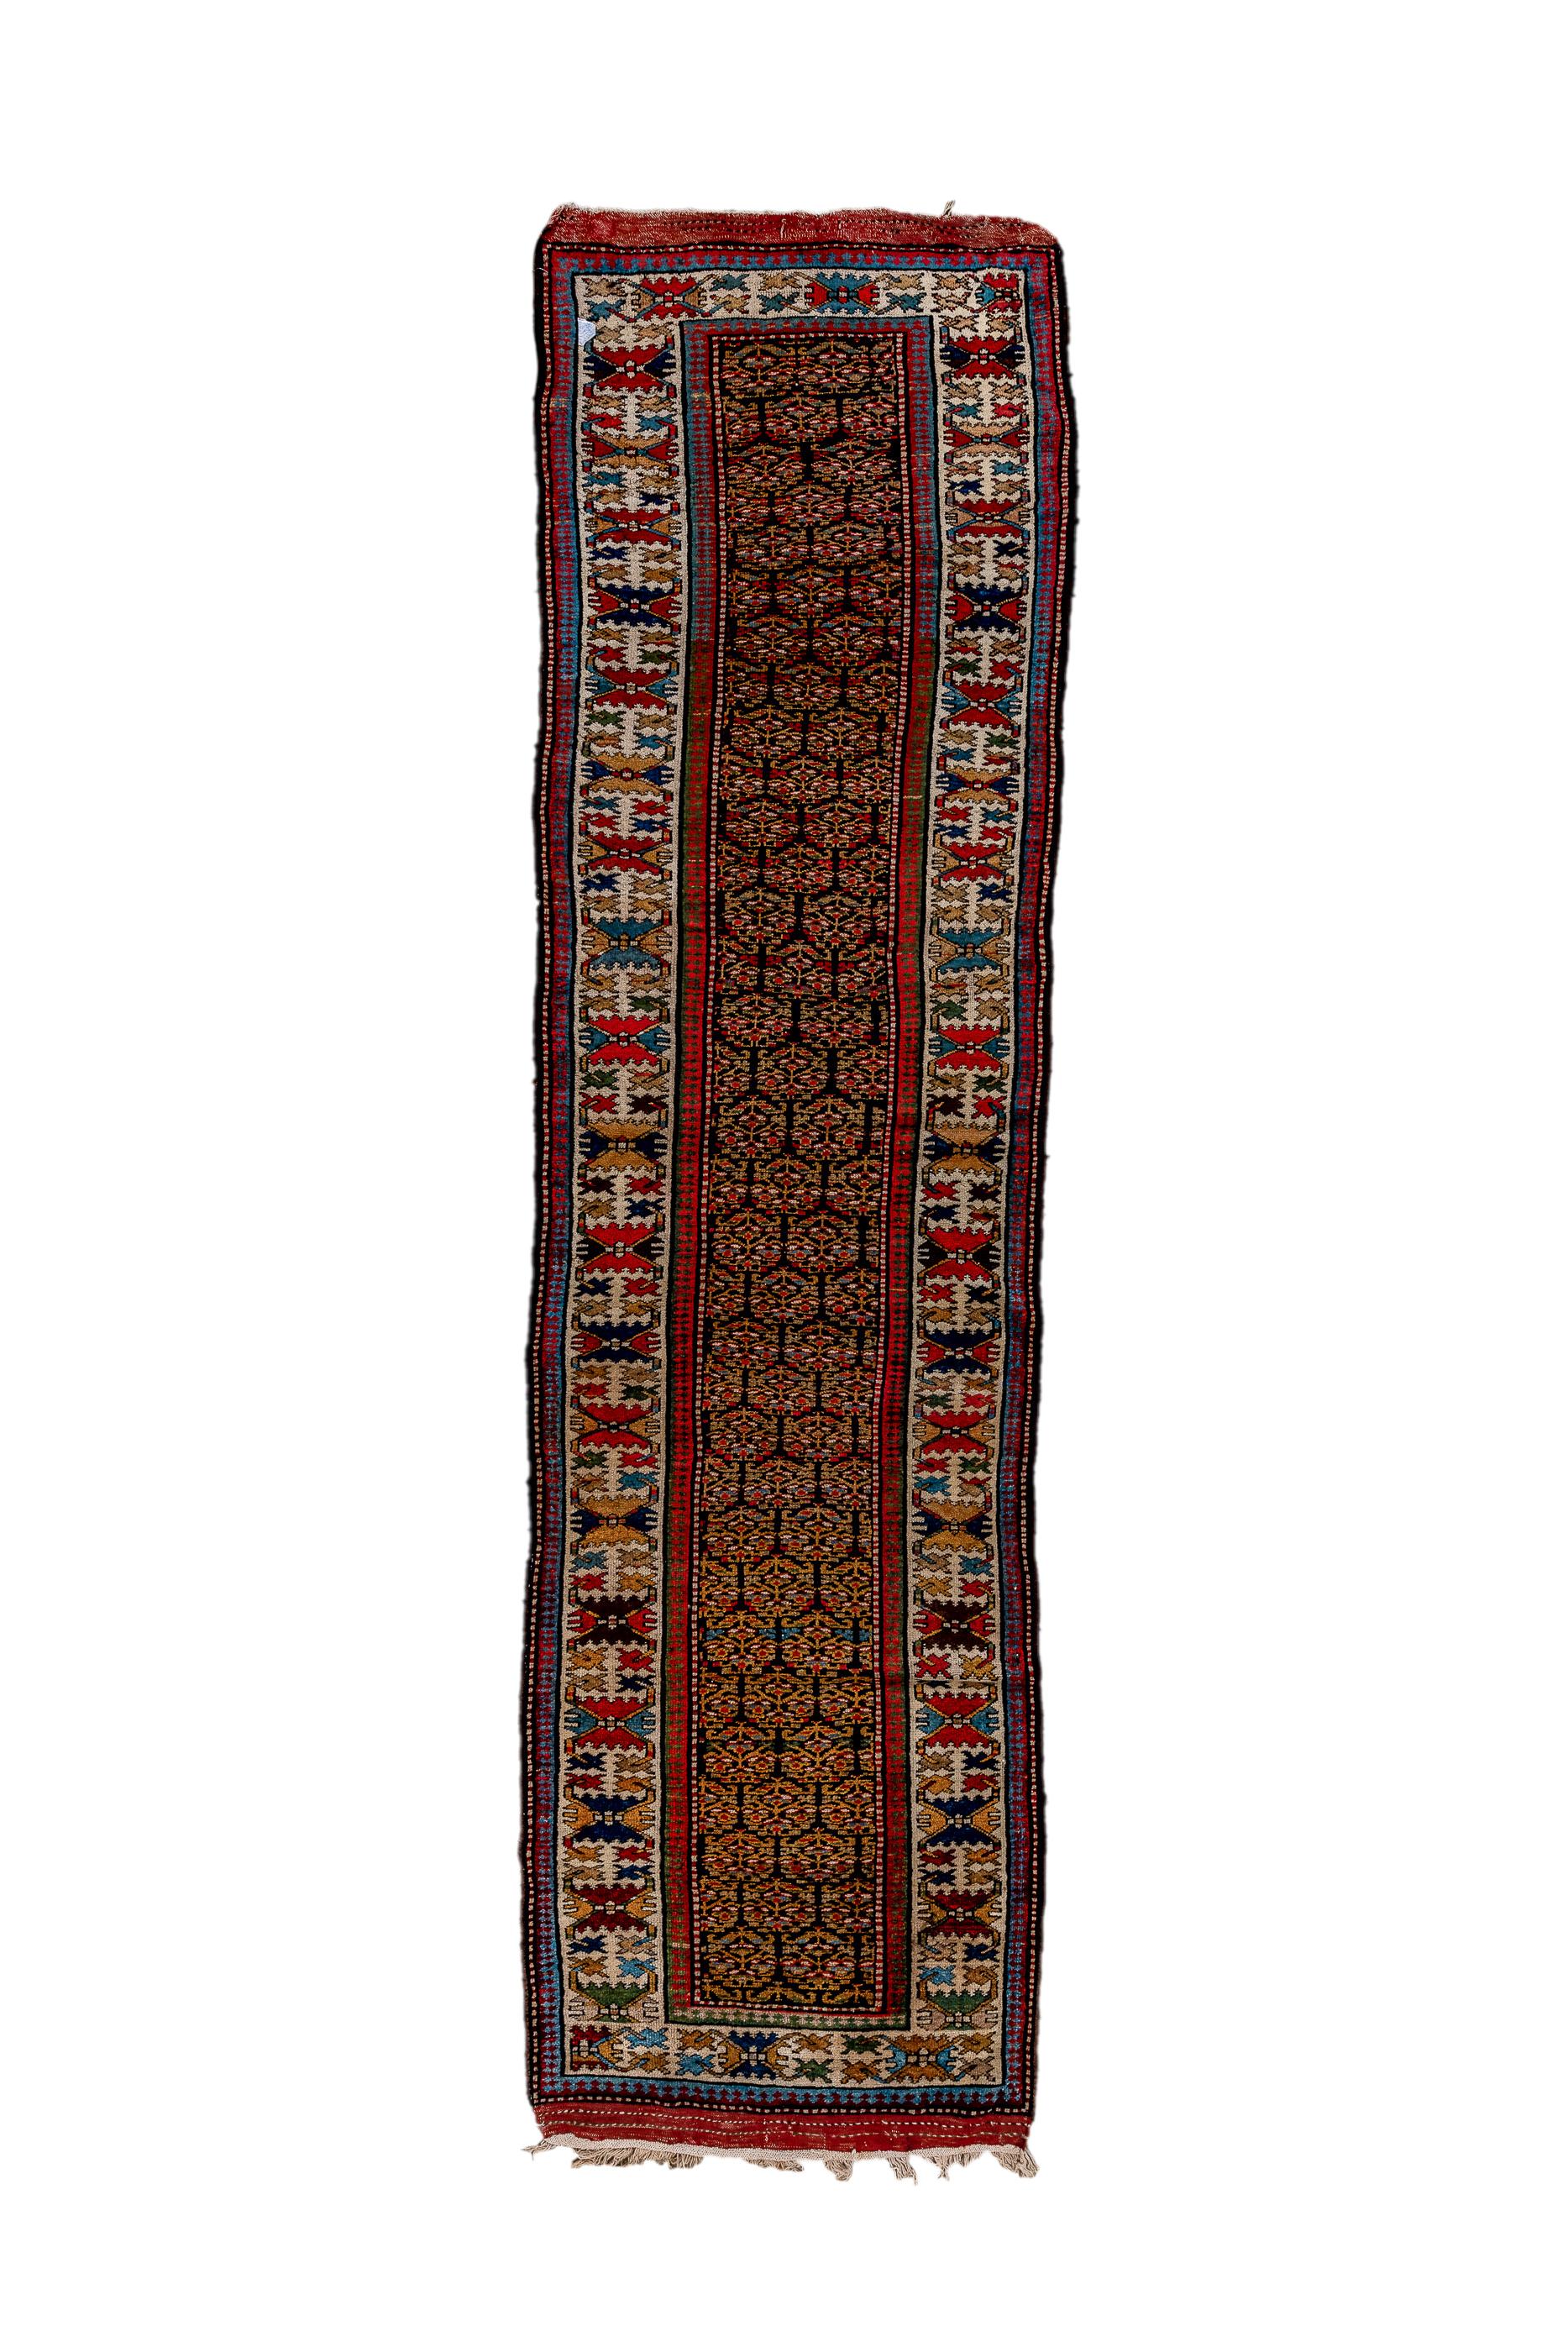 Ce chemin de table kurde de l'ouest de la Perse montre un champ brun foncé couvert de rangées de fleurs stylisées et ajourées à moitié tombantes, dans le style kurde caractéristique. L'écru  La bordure principale présente une version du motif